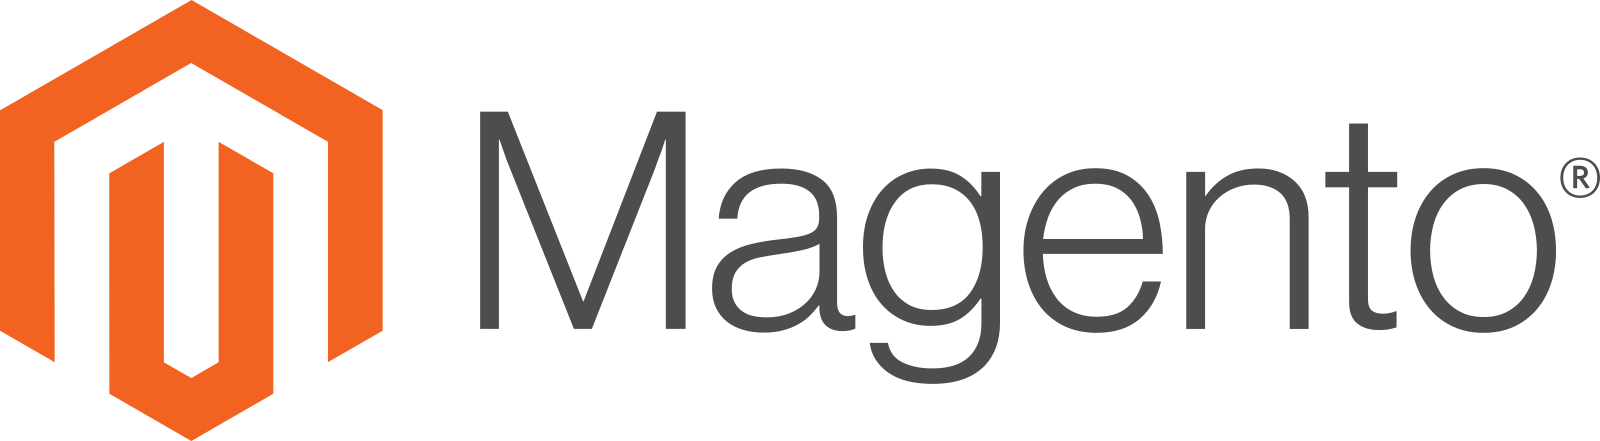 The image shows the Magento brand logo